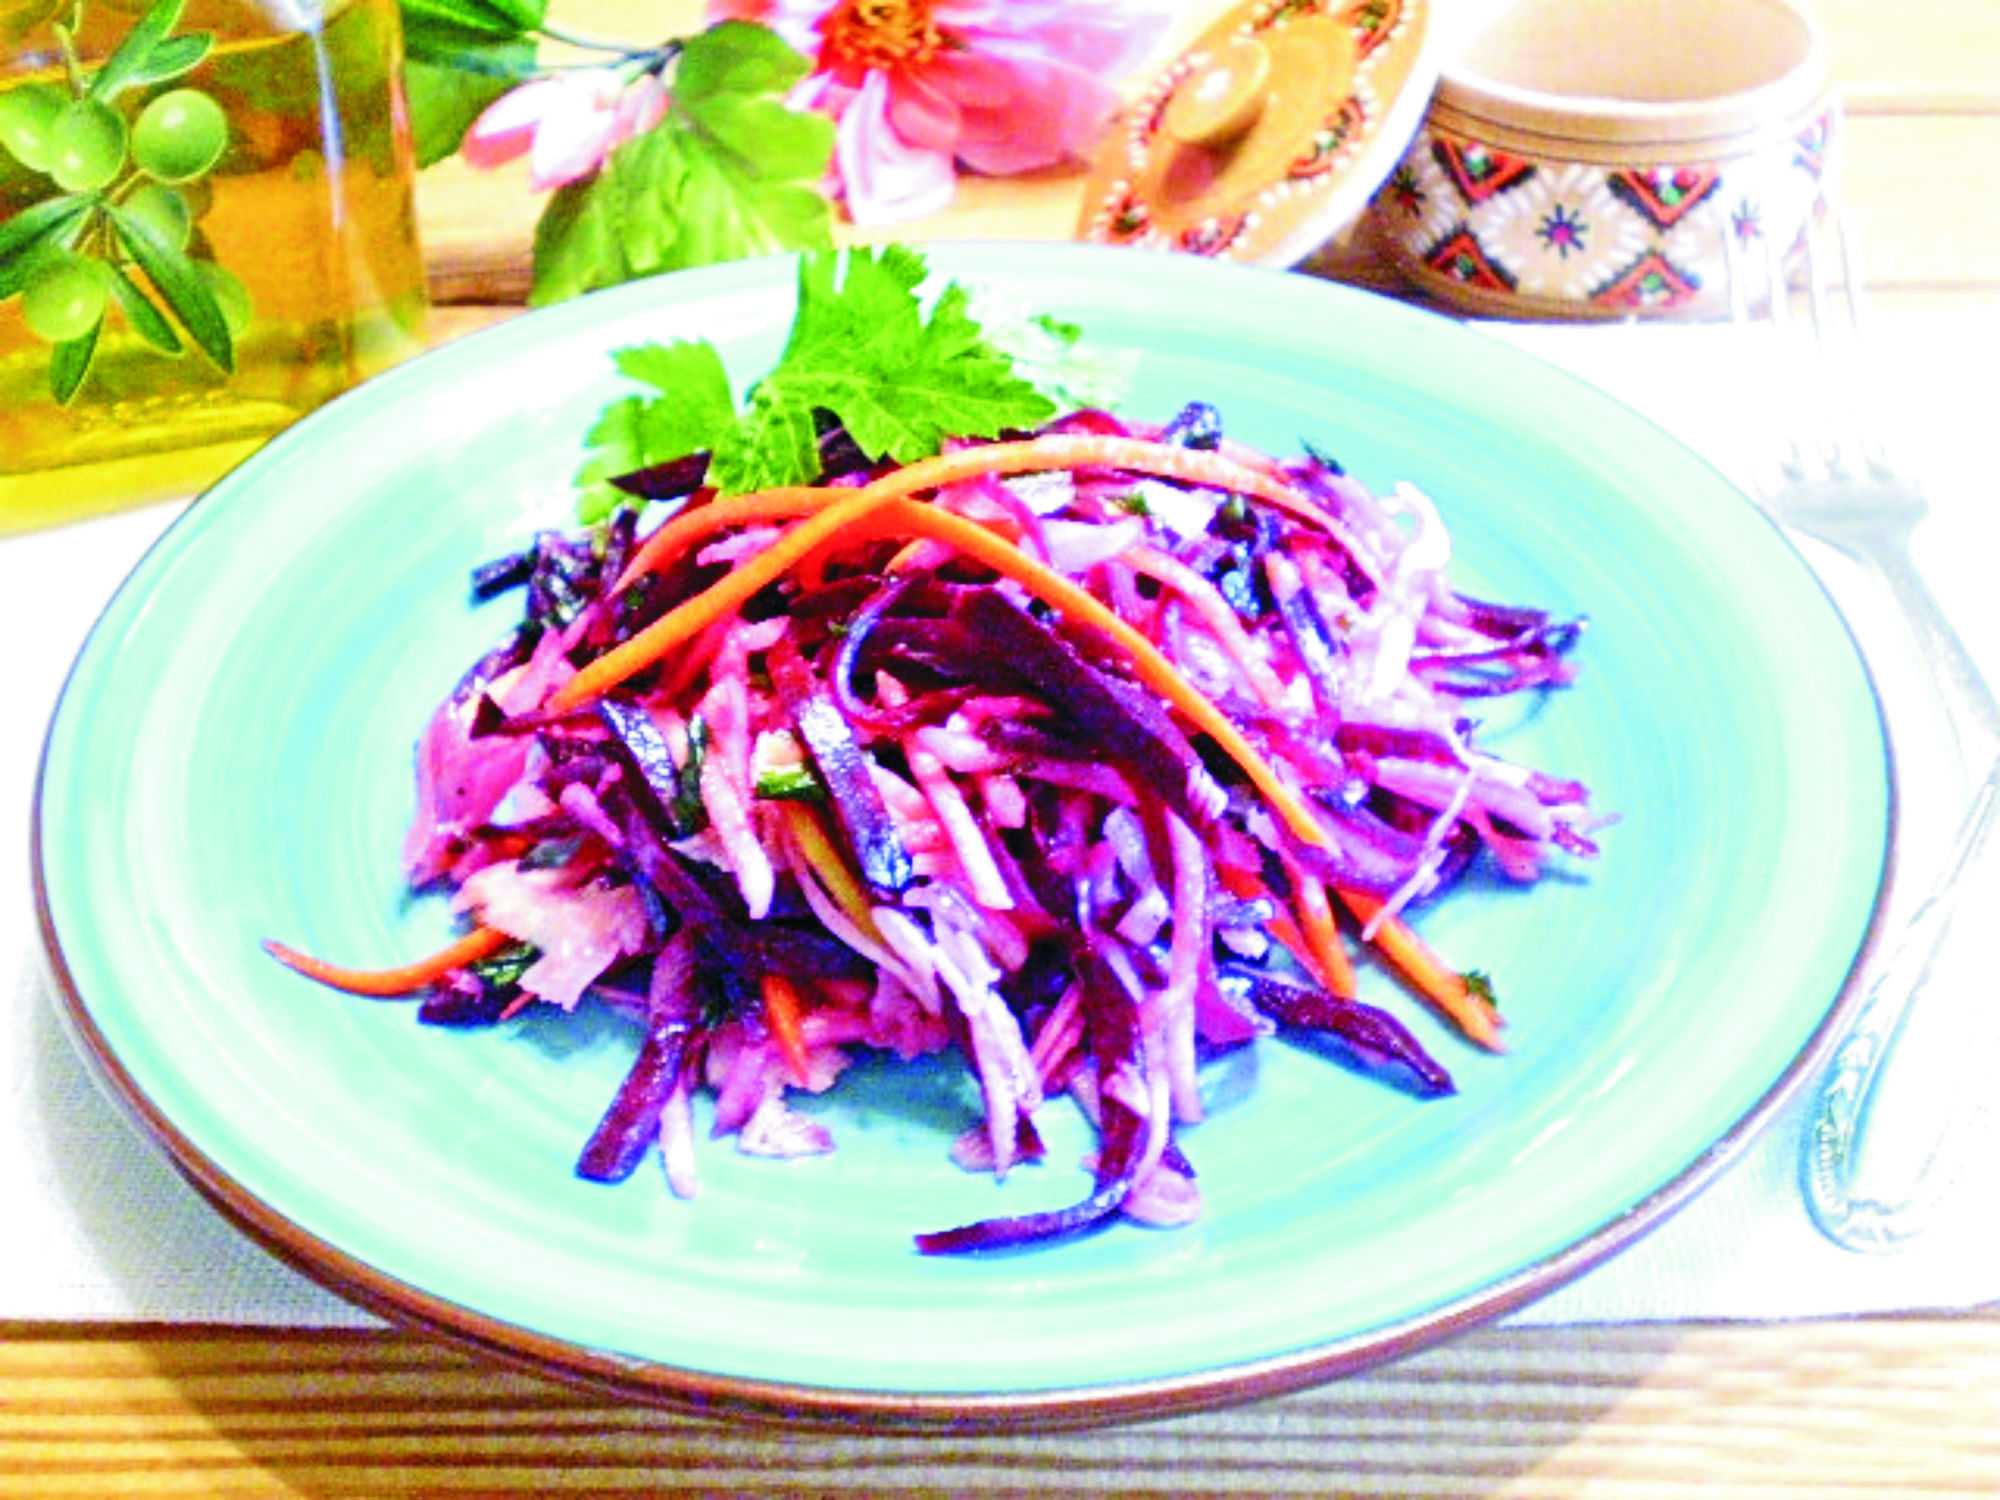 Как приготовить салат из капусты, свеклы, лука и моркови вегетарианский: поиск по ингредиентам, советы, отзывы, подсчет калорий, изменение порций, похожие рецепты